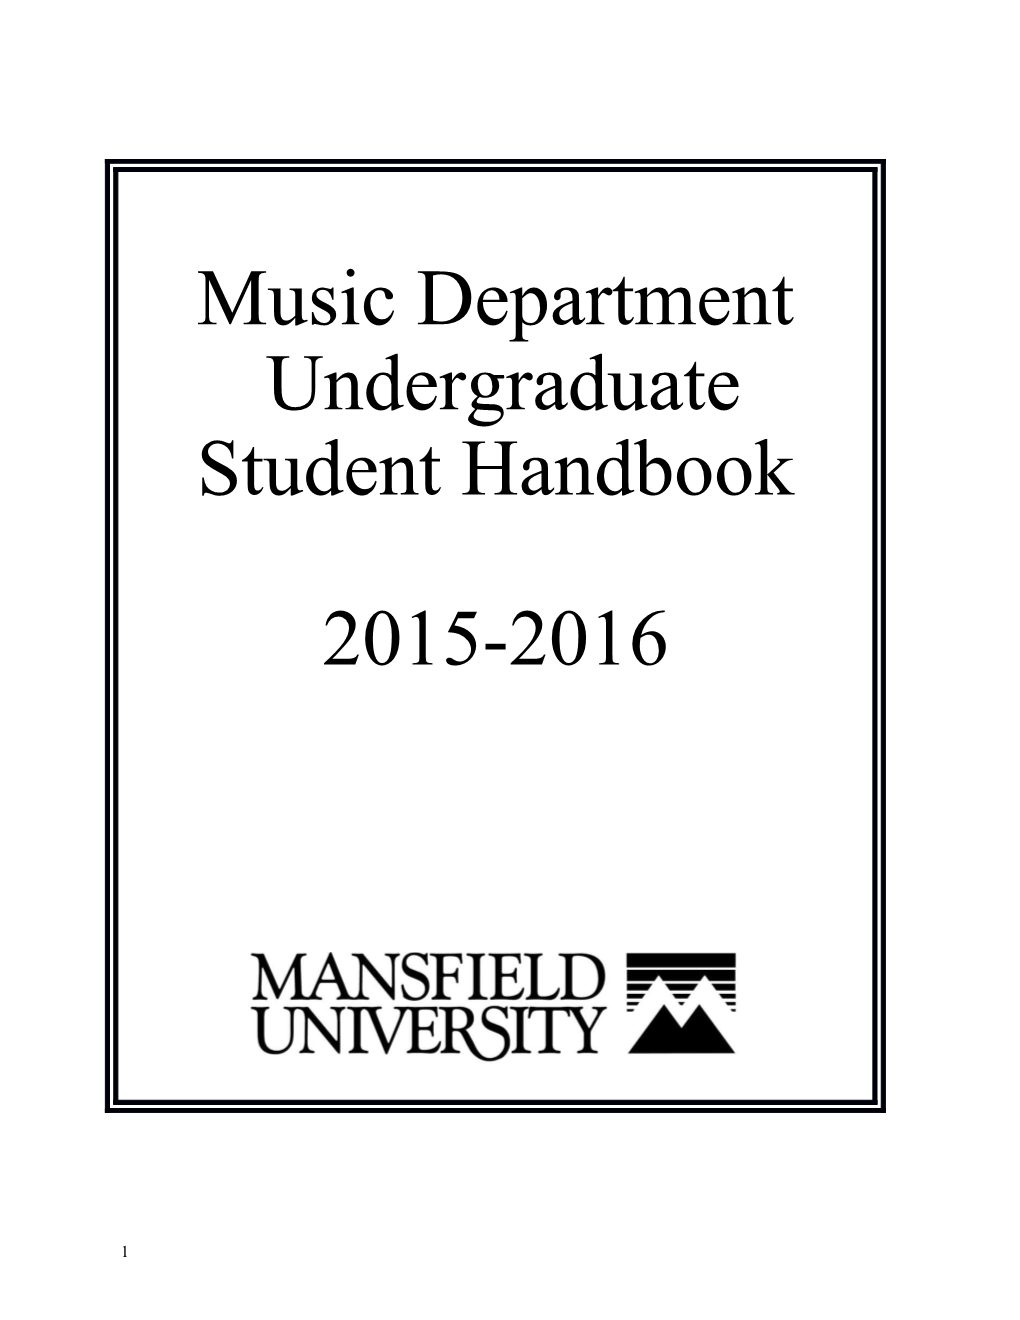 Music Department Undergraduate Student Handbook 2015-2016